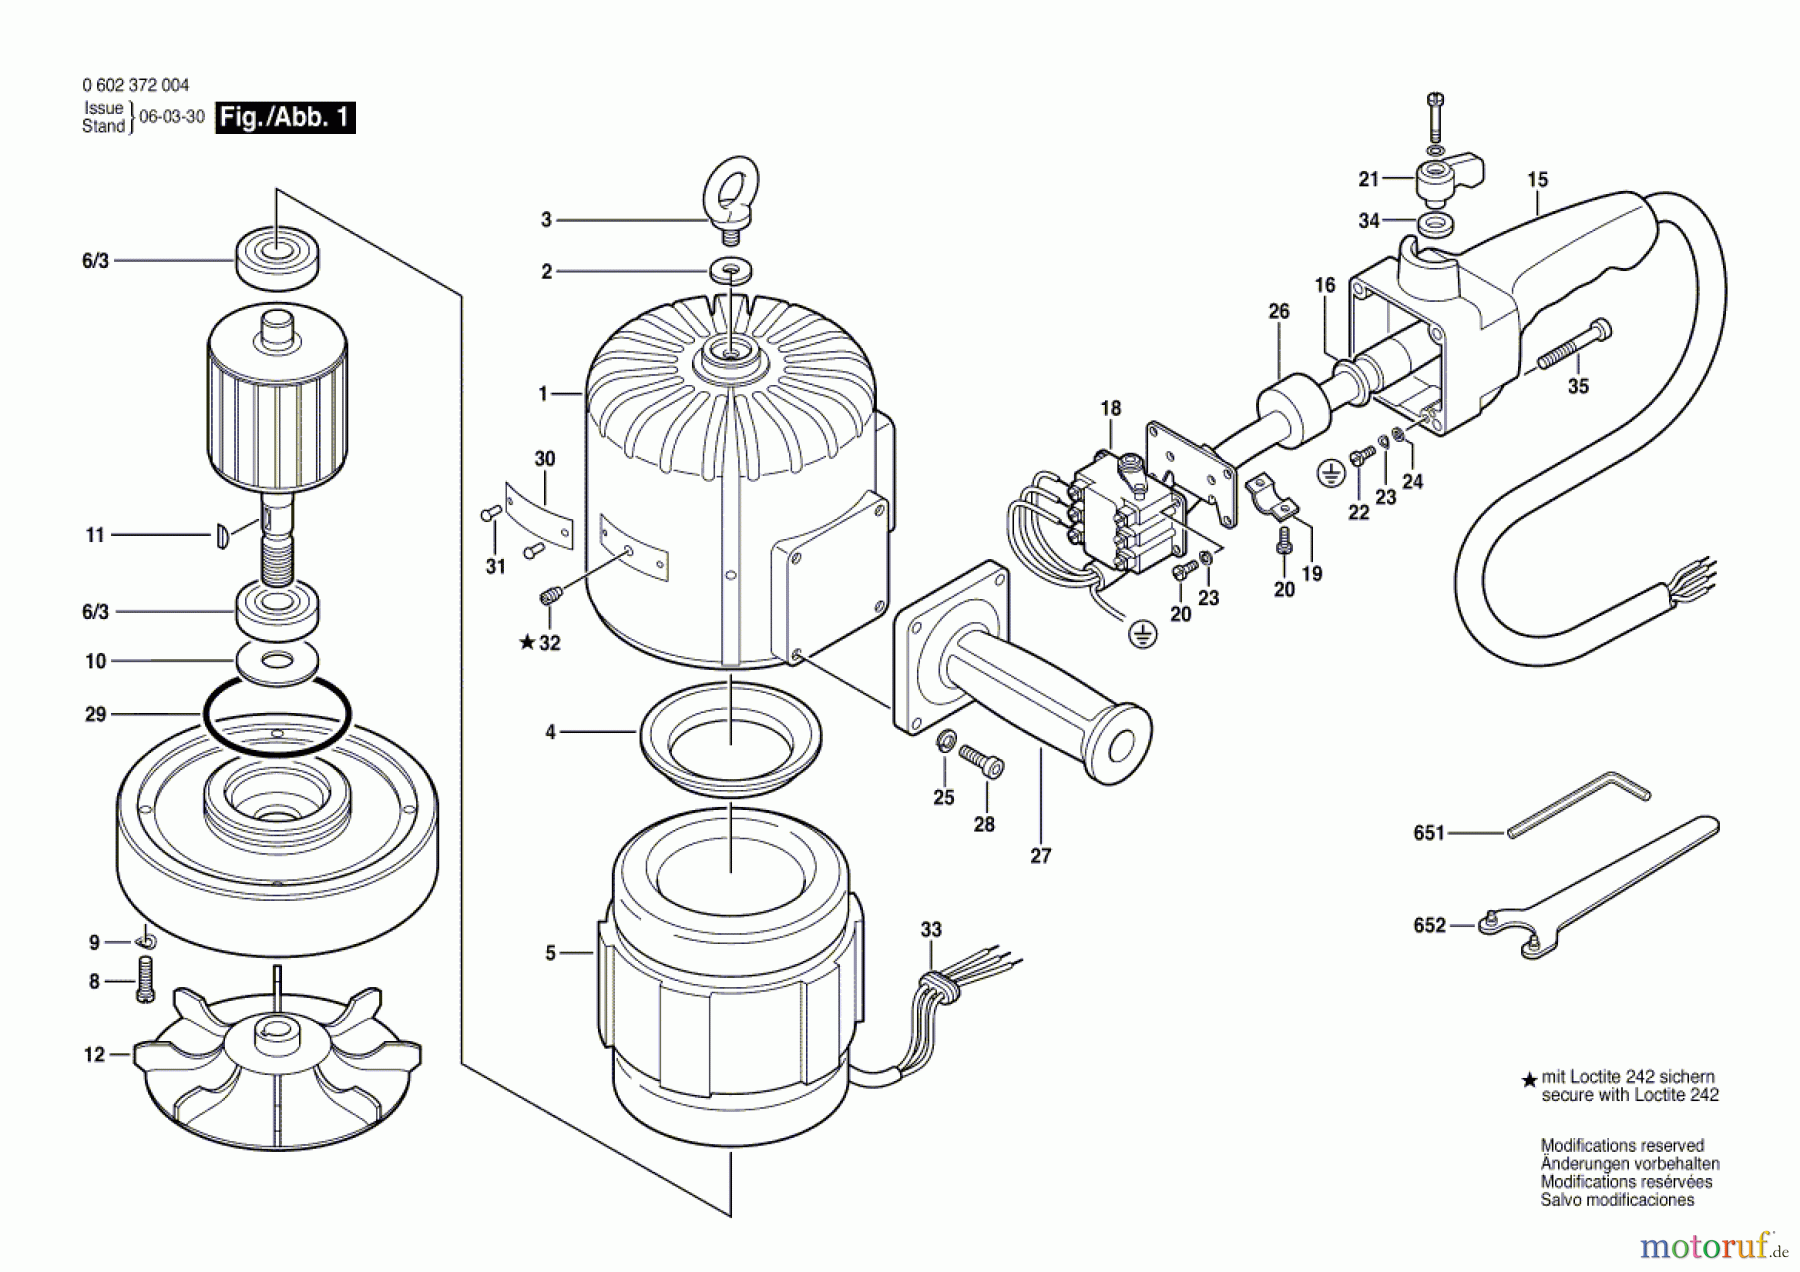  Bosch Werkzeug Hf-Tellerschleifer ---- Seite 1